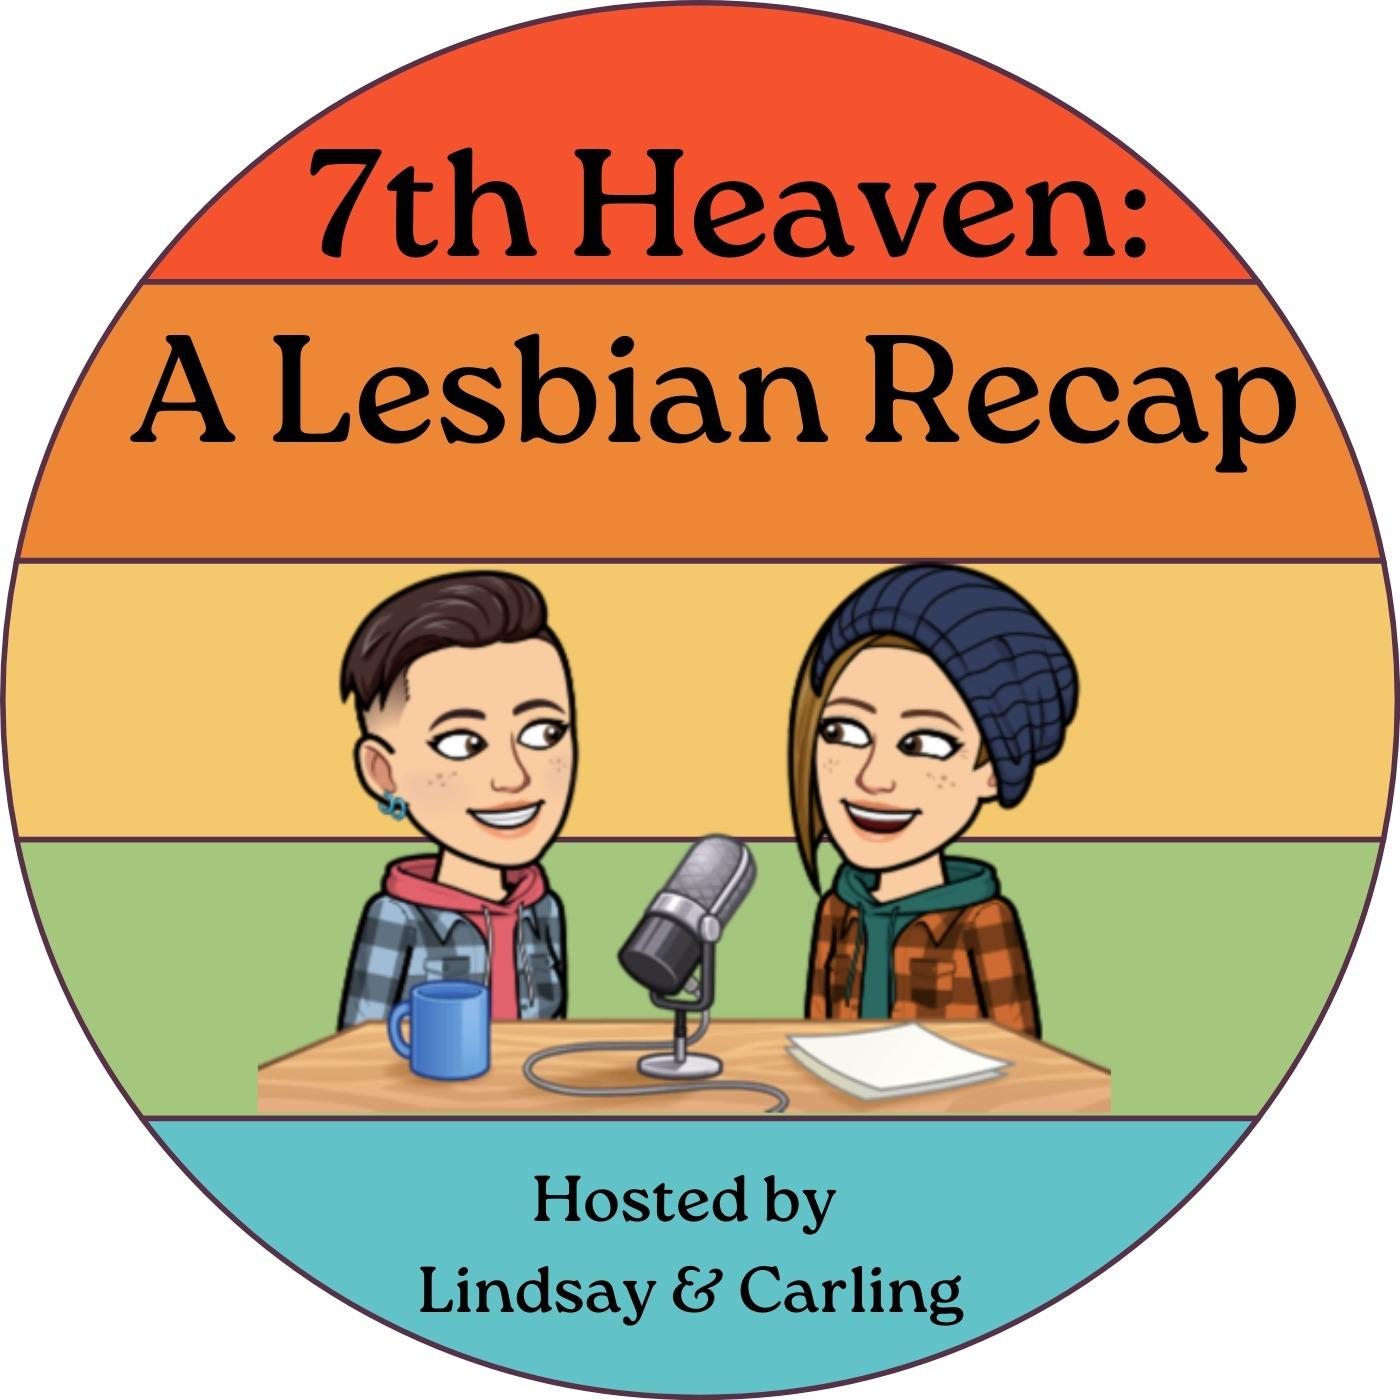 7th Heaven: A Lesbian Recap